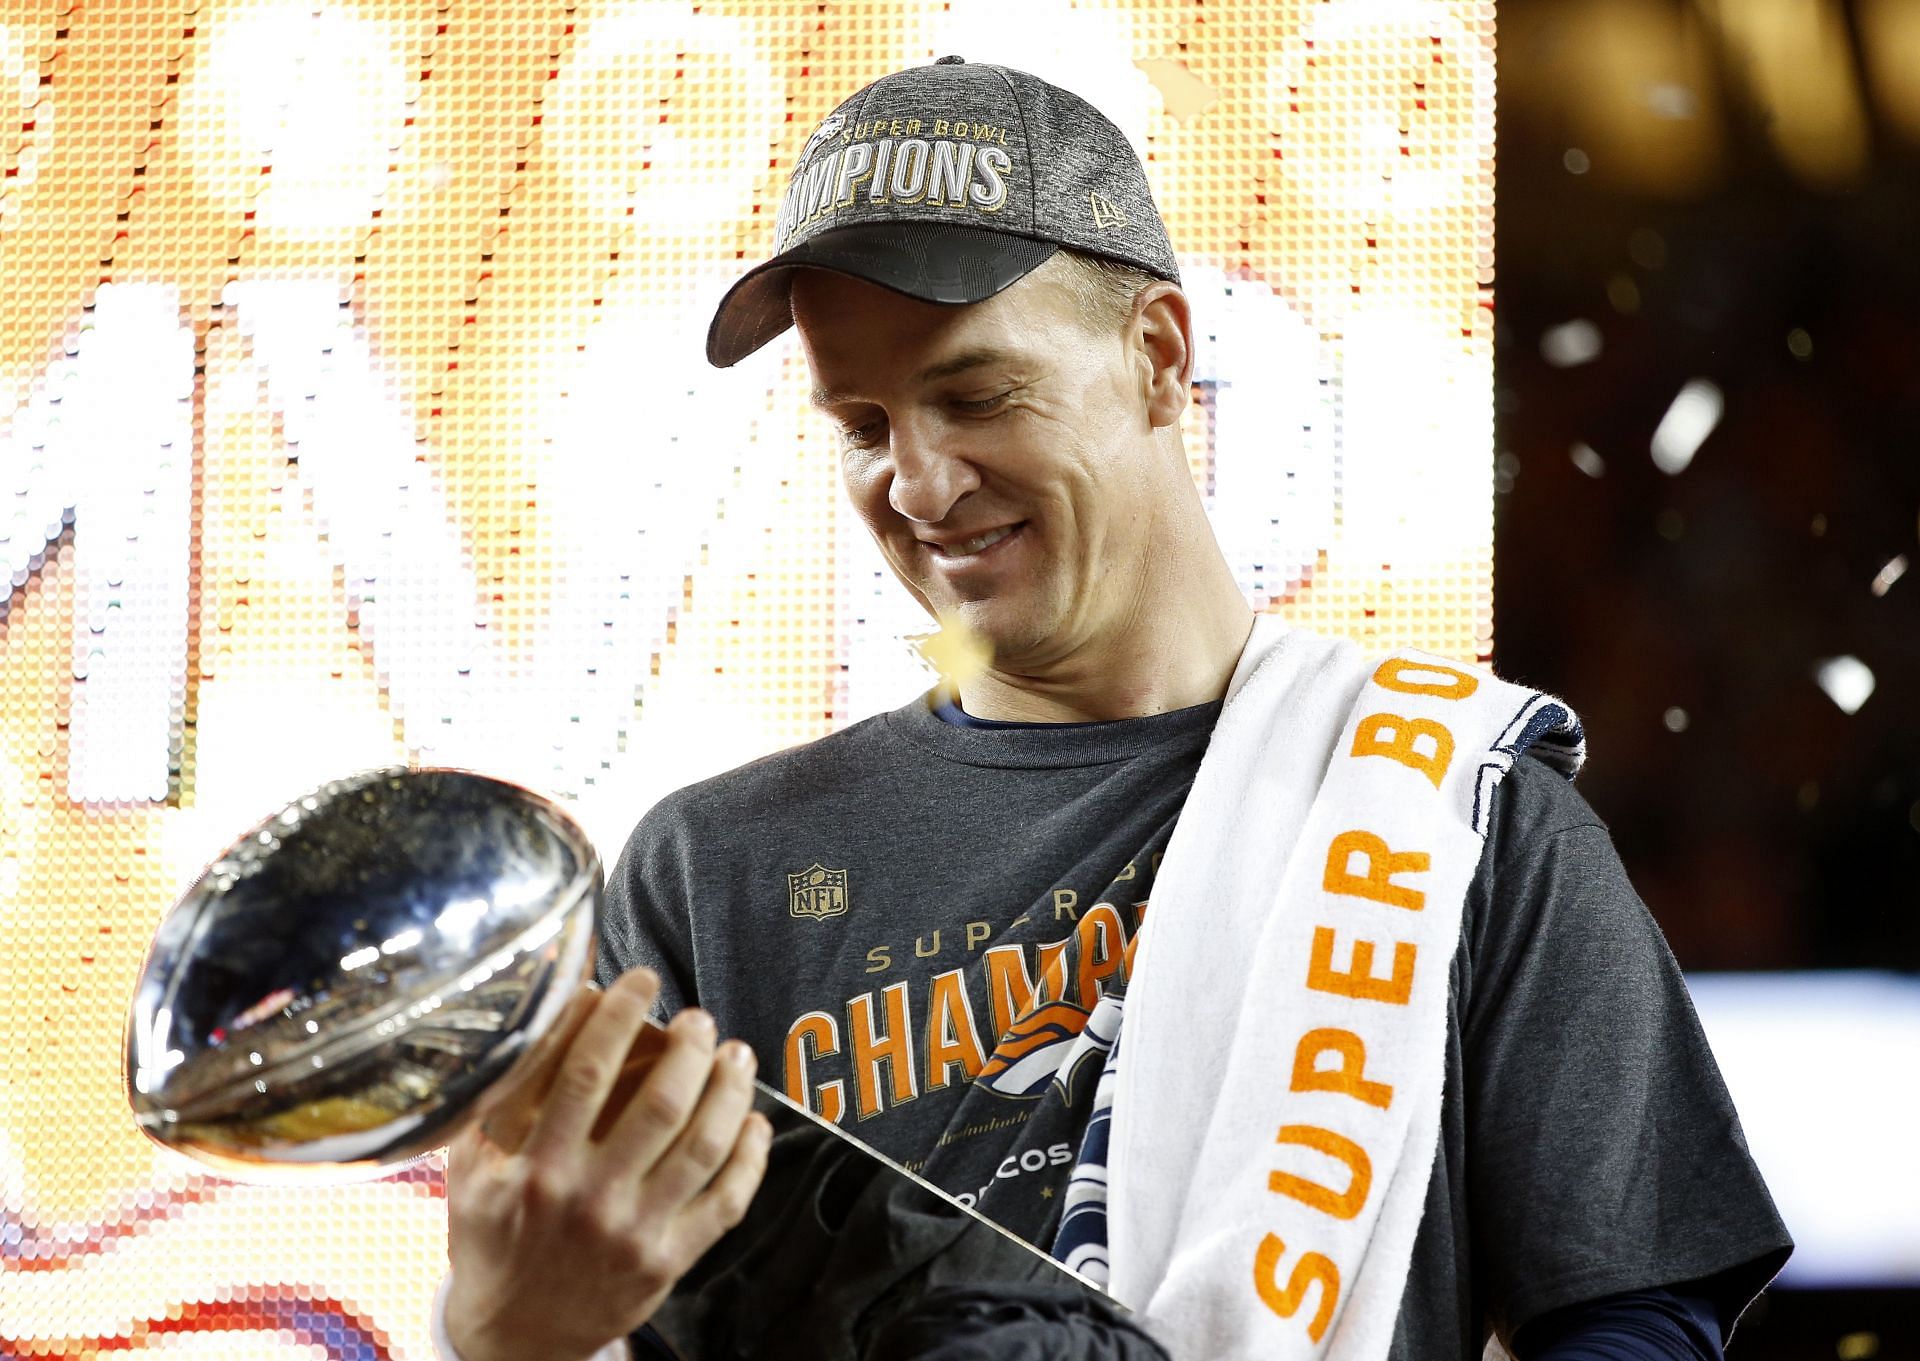 Peyton Manning reacts after winning Super Bowl 50